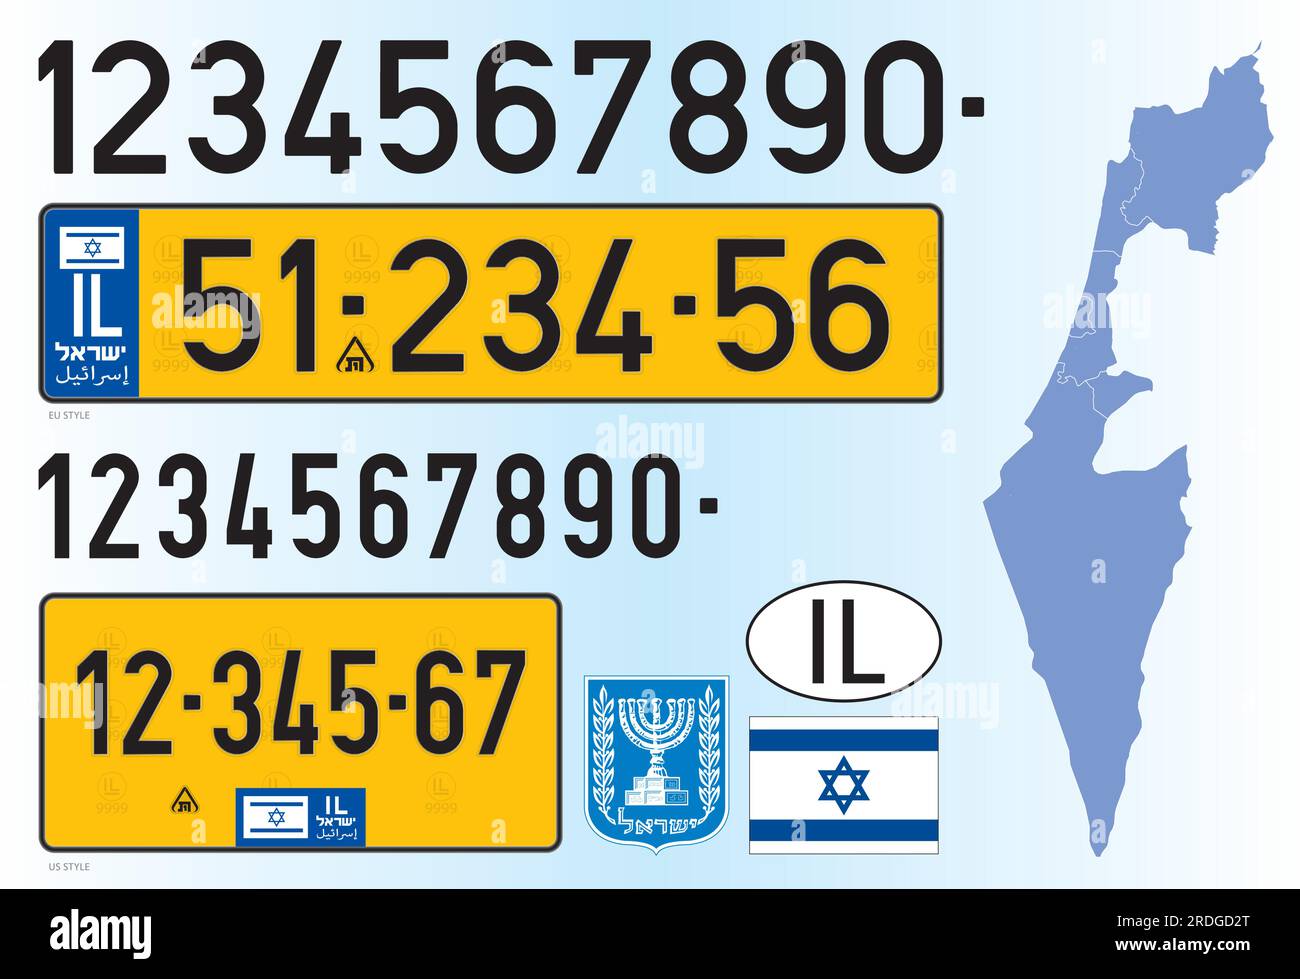 Schema della targa auto israeliana, numeri e simboli, illustrazione vettoriale, Israele, Medio Oriente Illustrazione Vettoriale